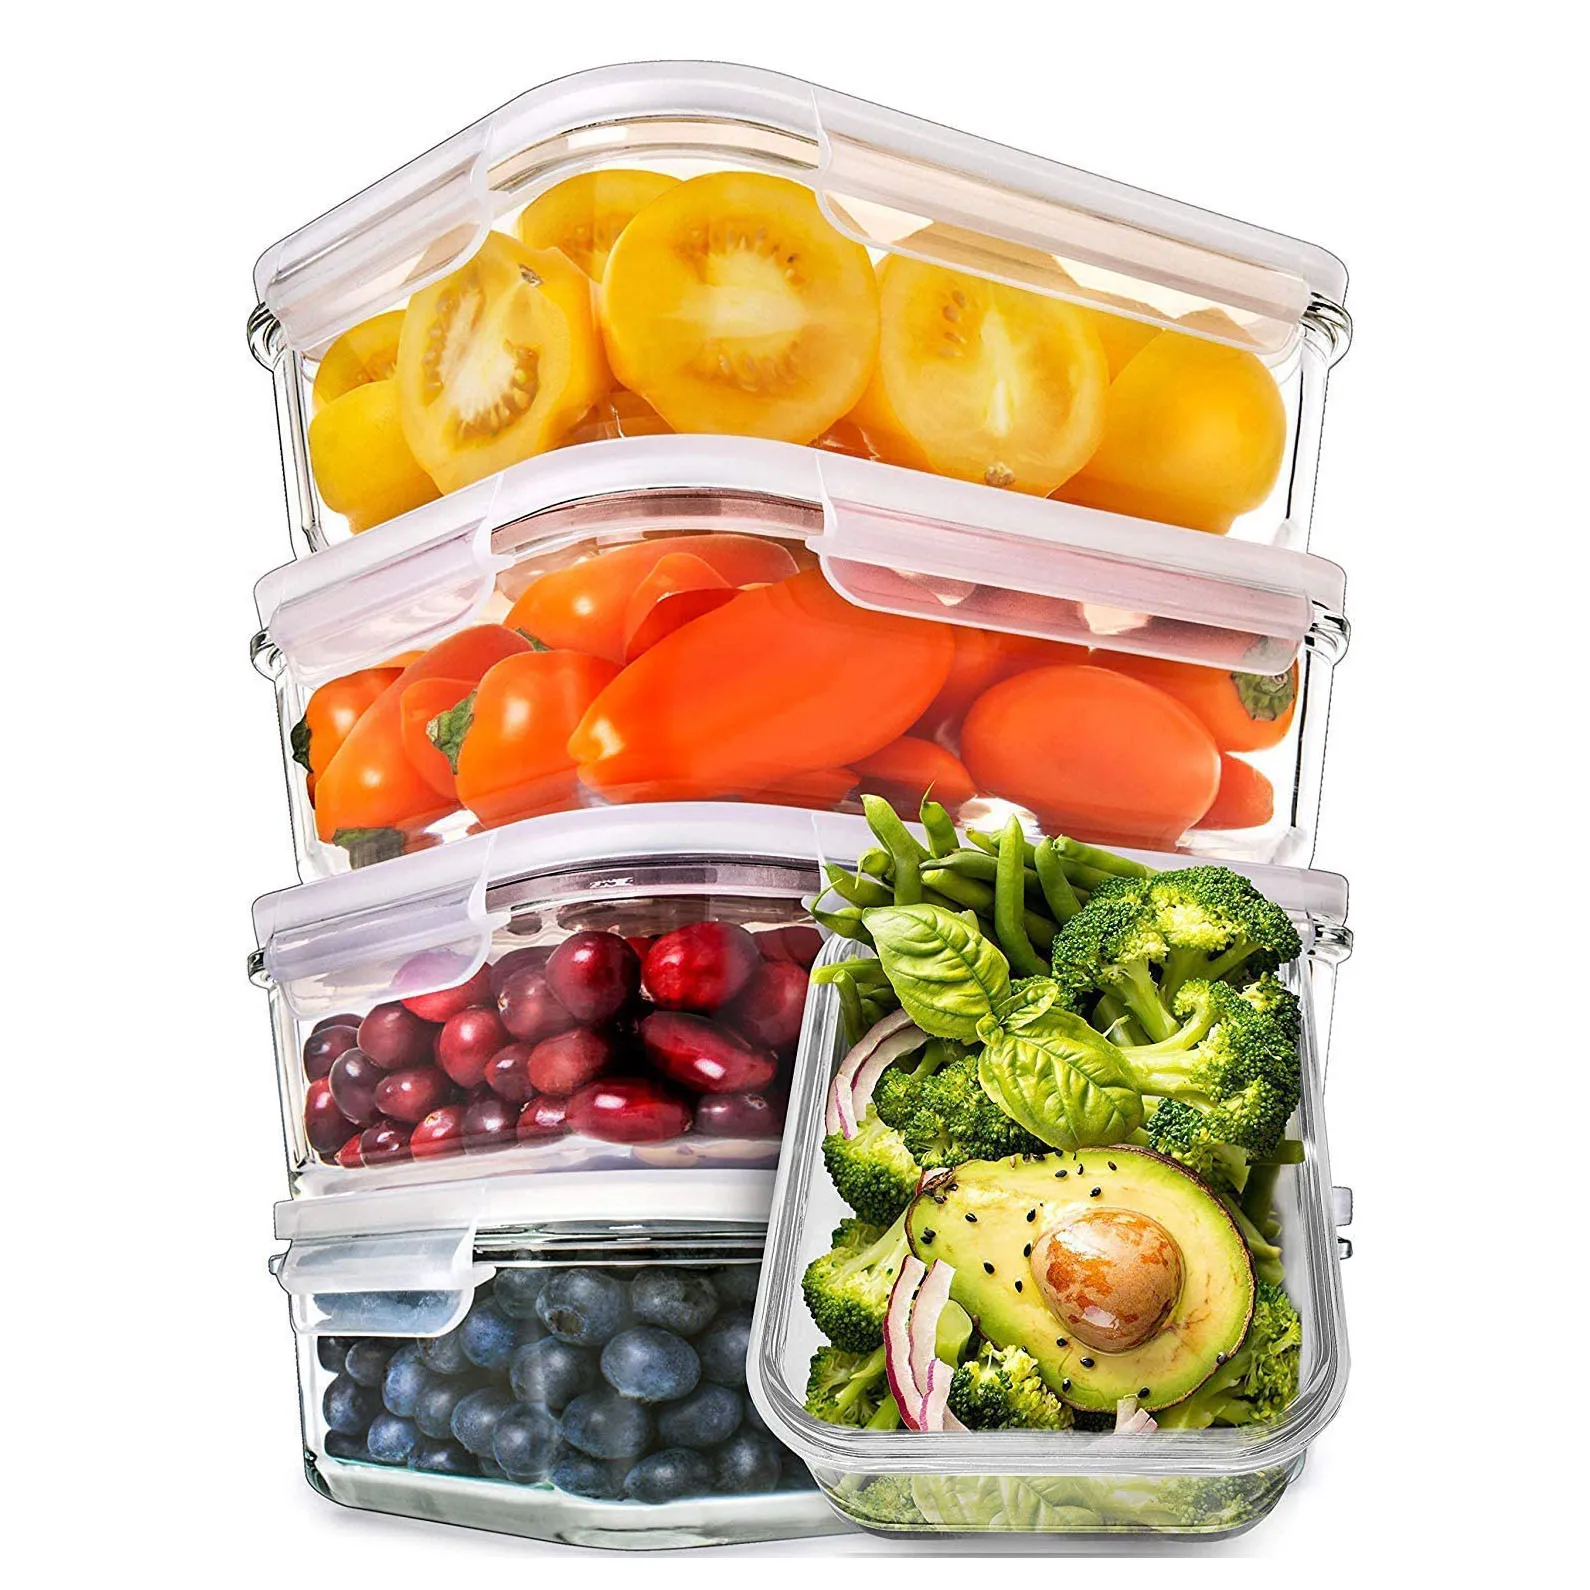 Контейнер для продуктов. Хранение в холодильнике в контейнерах стекло. Еда в контейнерах на неделю. Продукты аллея.